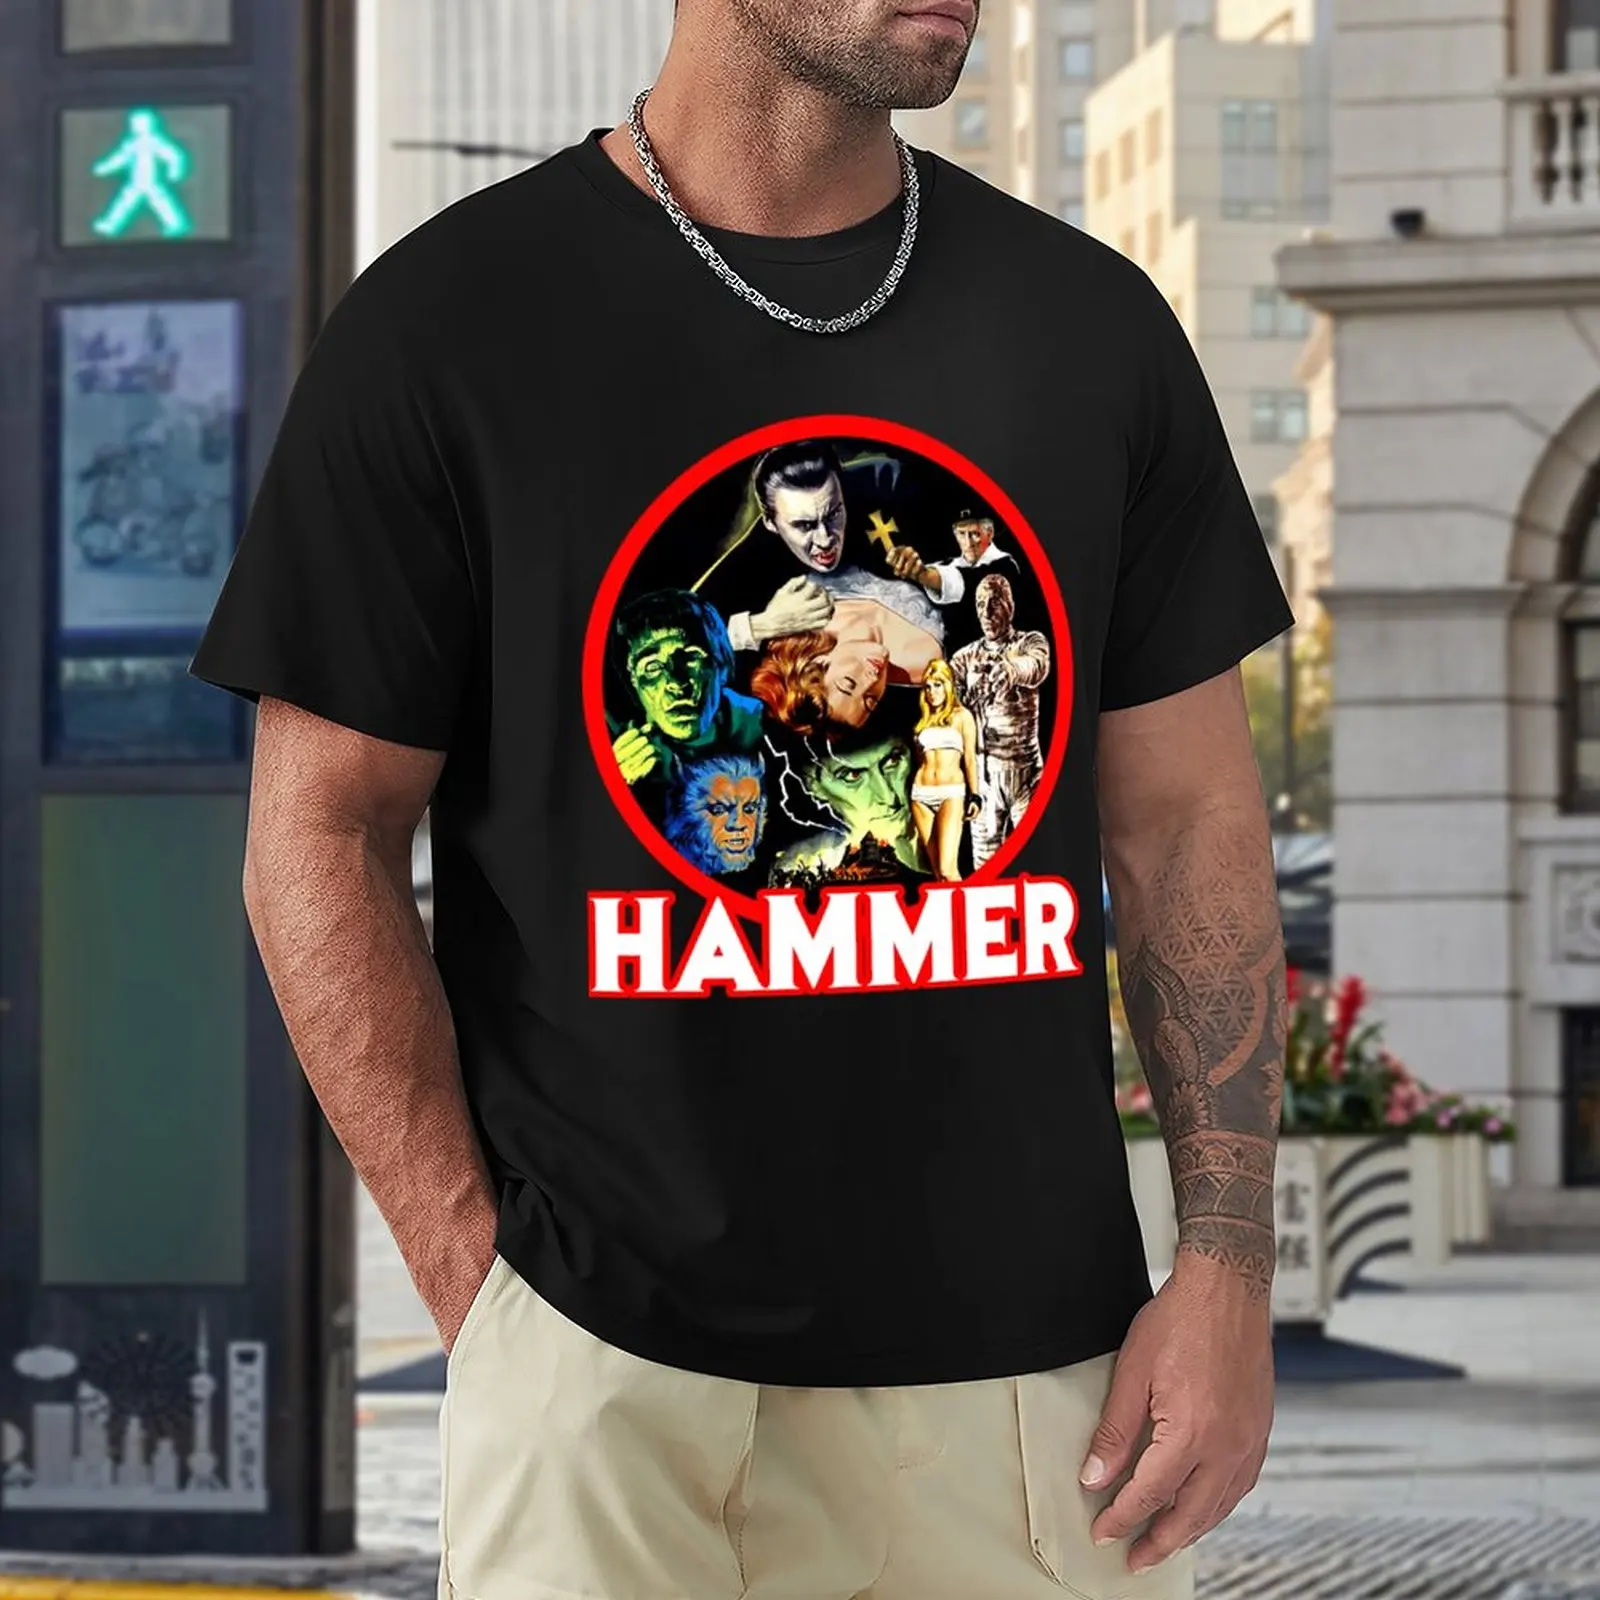 Hammer Classic. Футболка, футболки на заказ, короткая футболка, винтажная одежда, футболка оверсайз для мужчин